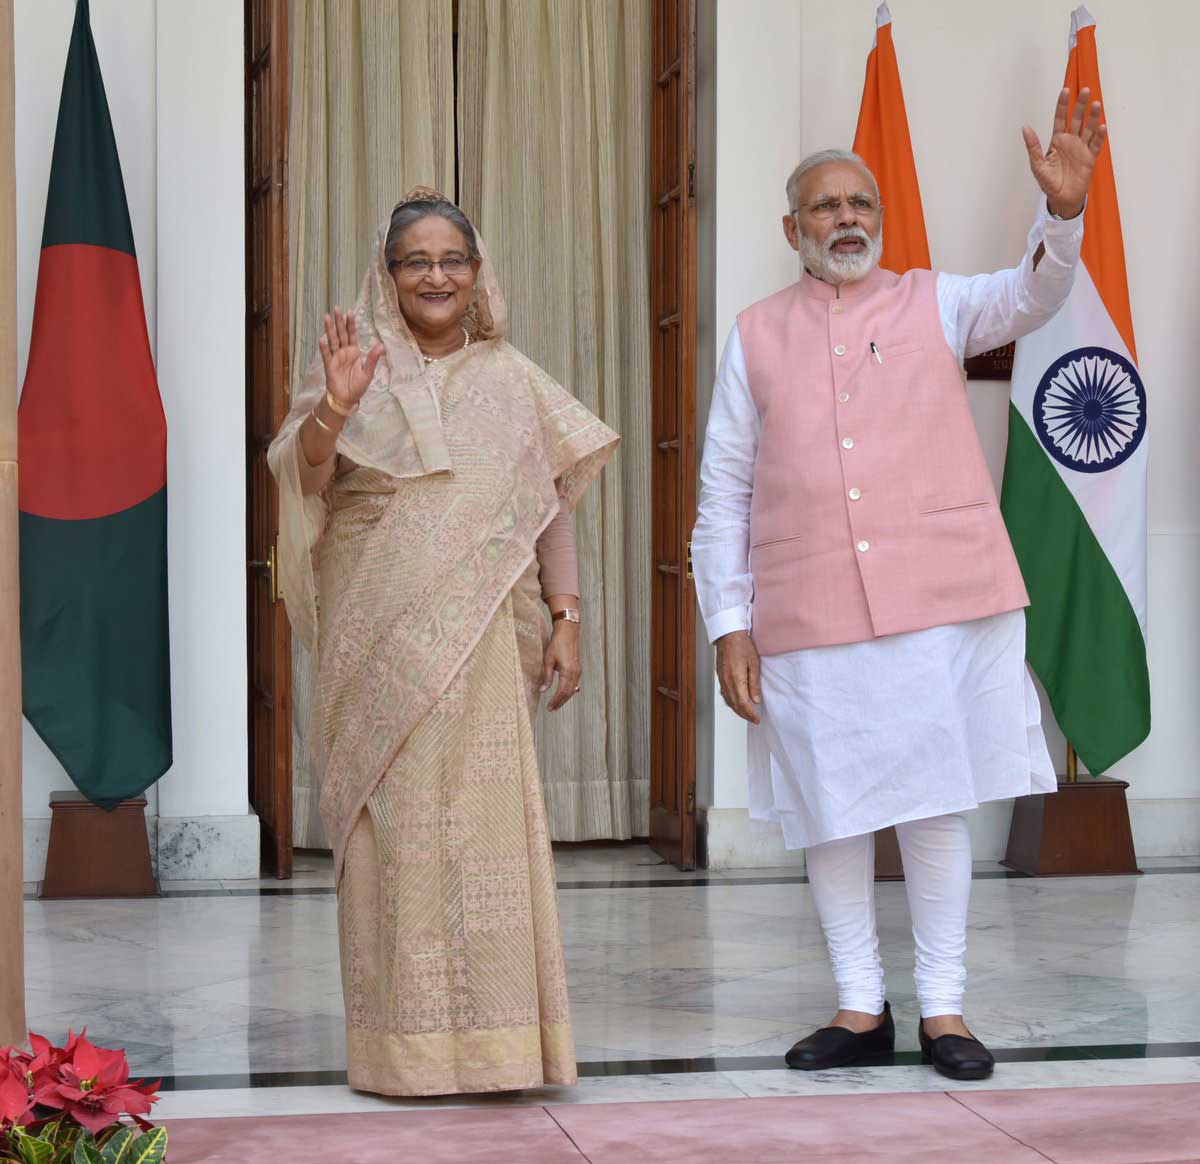 बांग्लादेश की प्रधानमंत्री शेख हसीना और प्रधानमंत्री नरेंद्र मोदी 